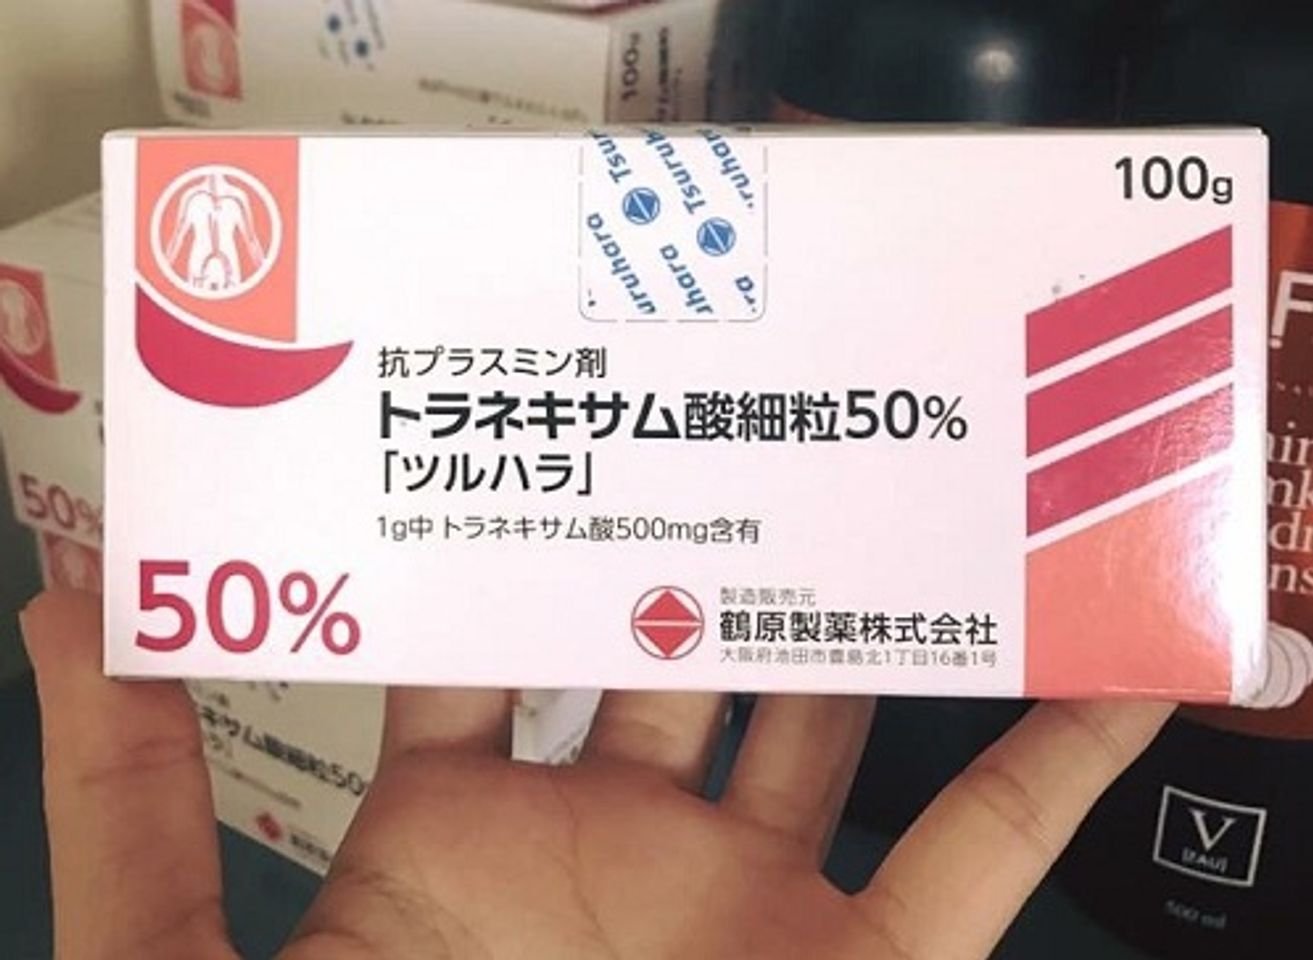 Bột uống trắng da trị nám Tranexamic Acid 50% Tsuruhara 1